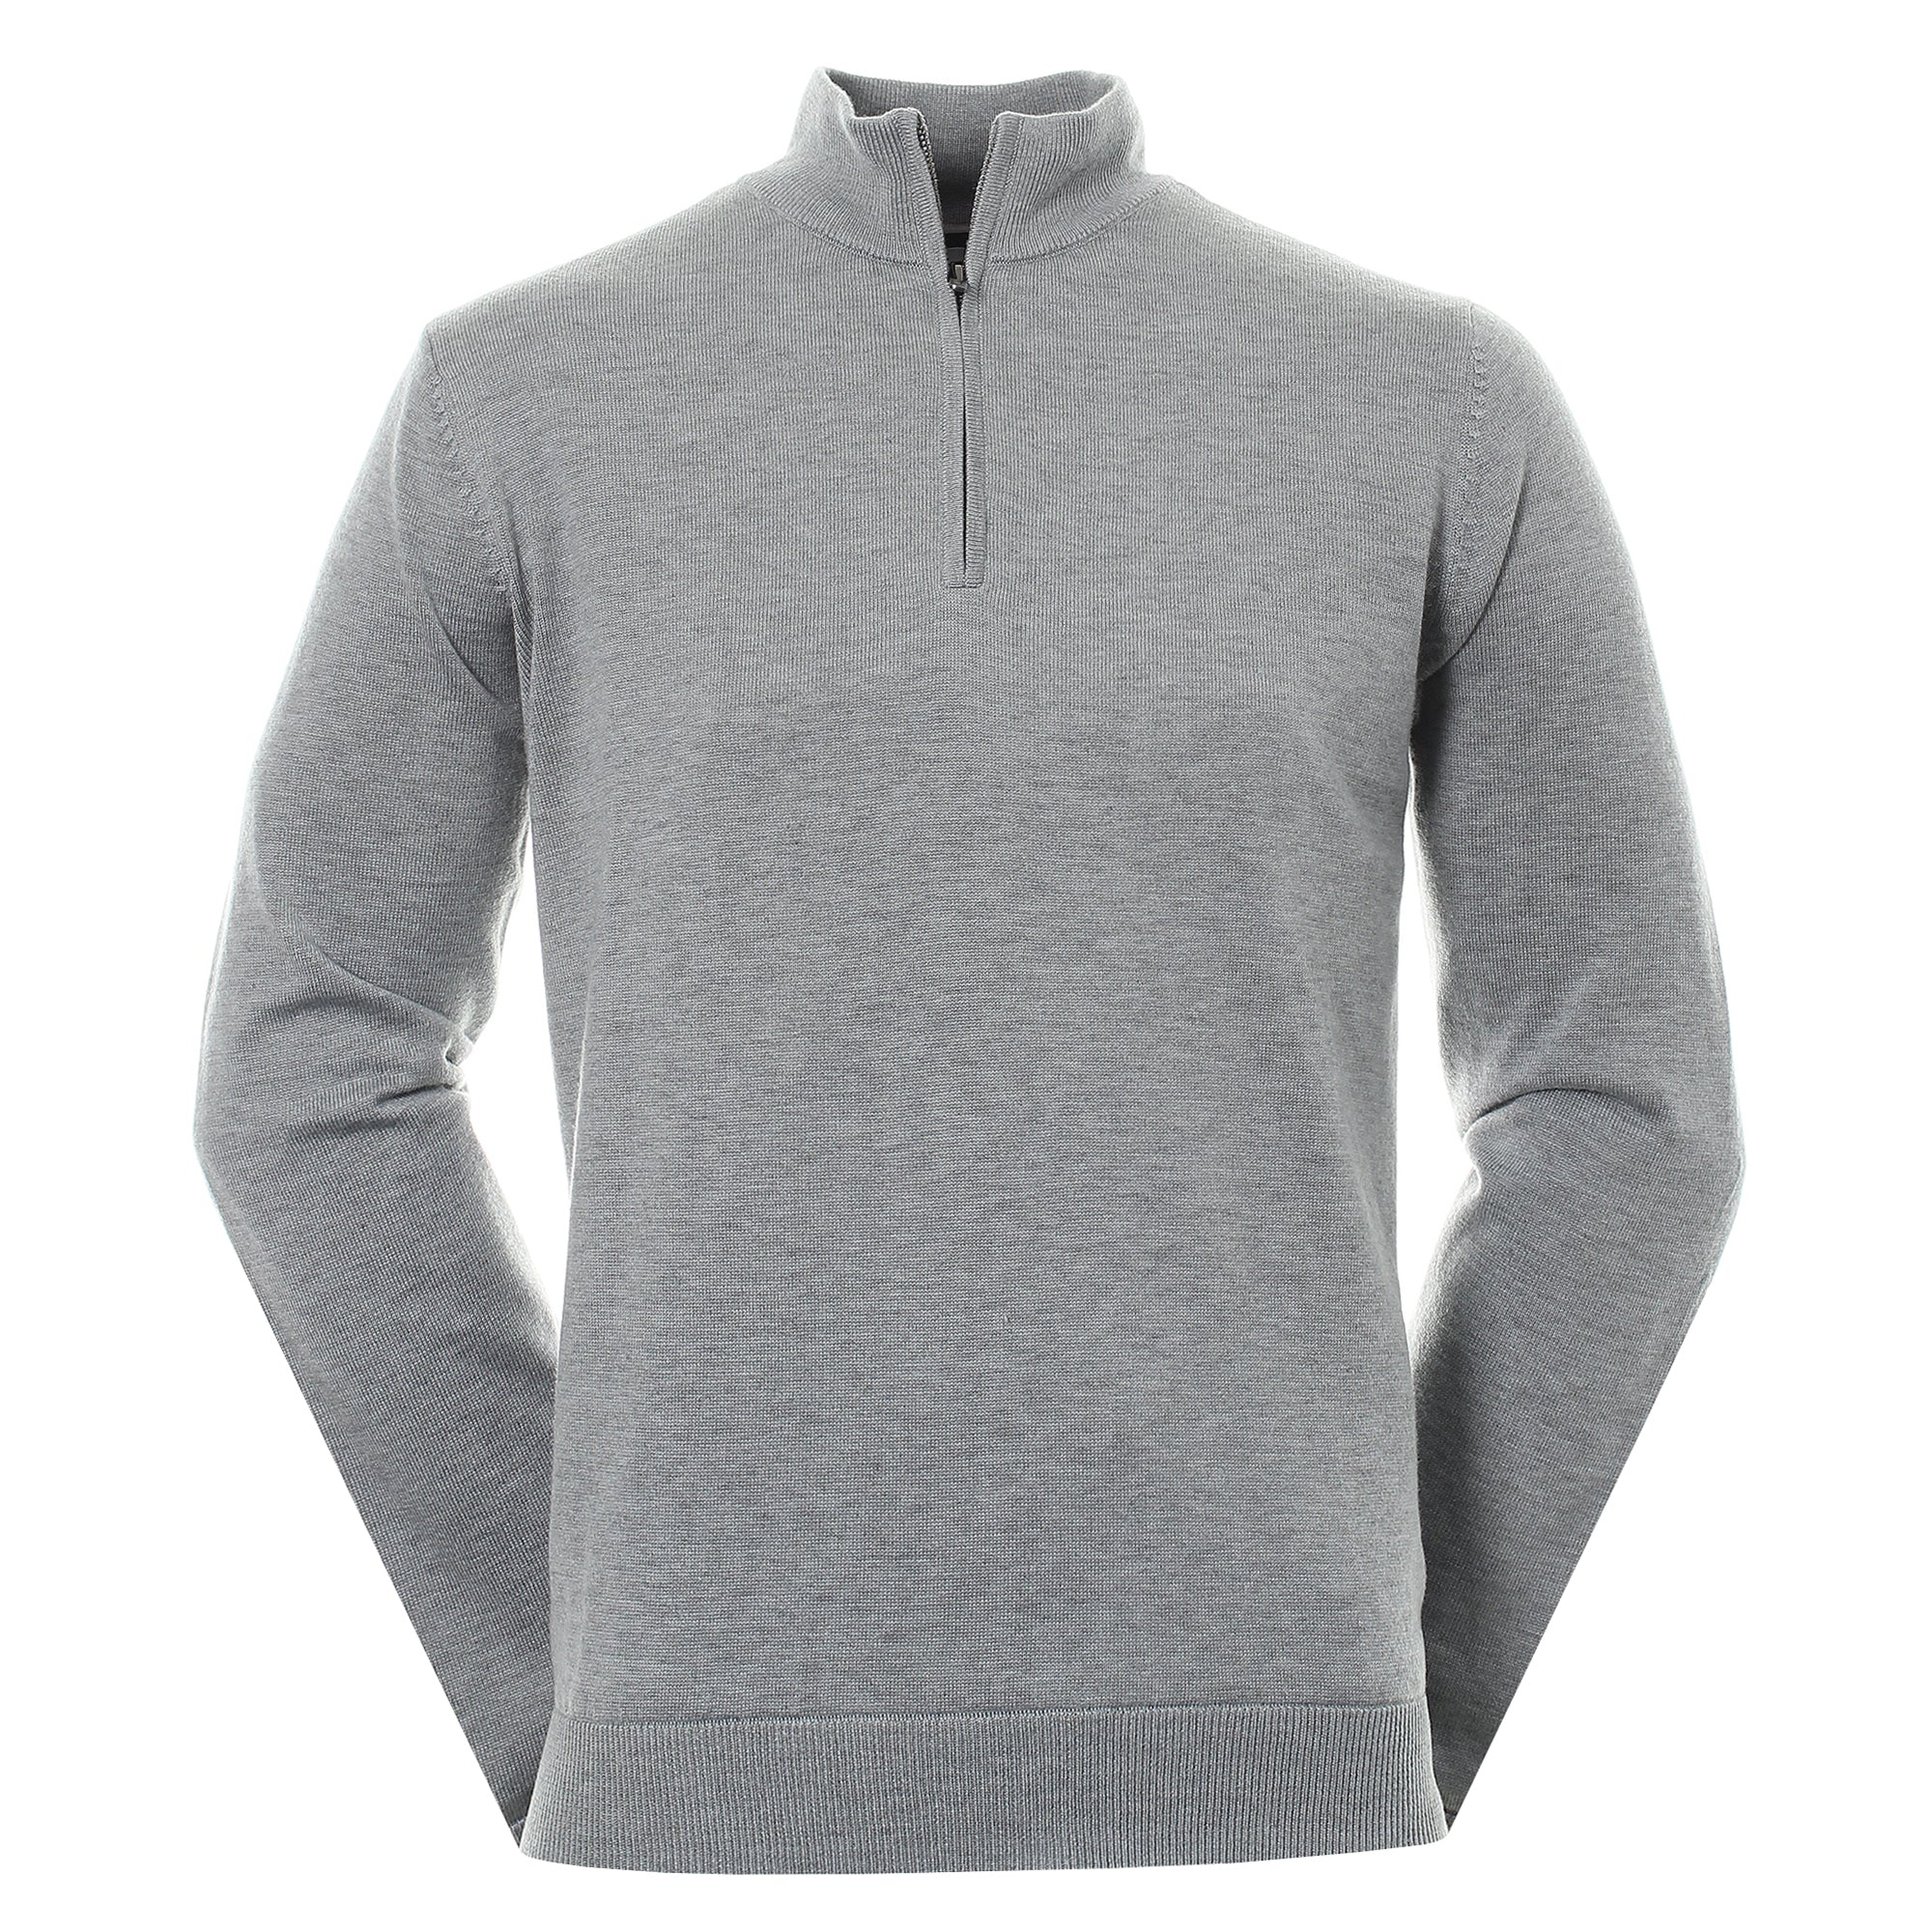 footjoy-wool-blend-lined-1-2-zip-sweater-90211-grey